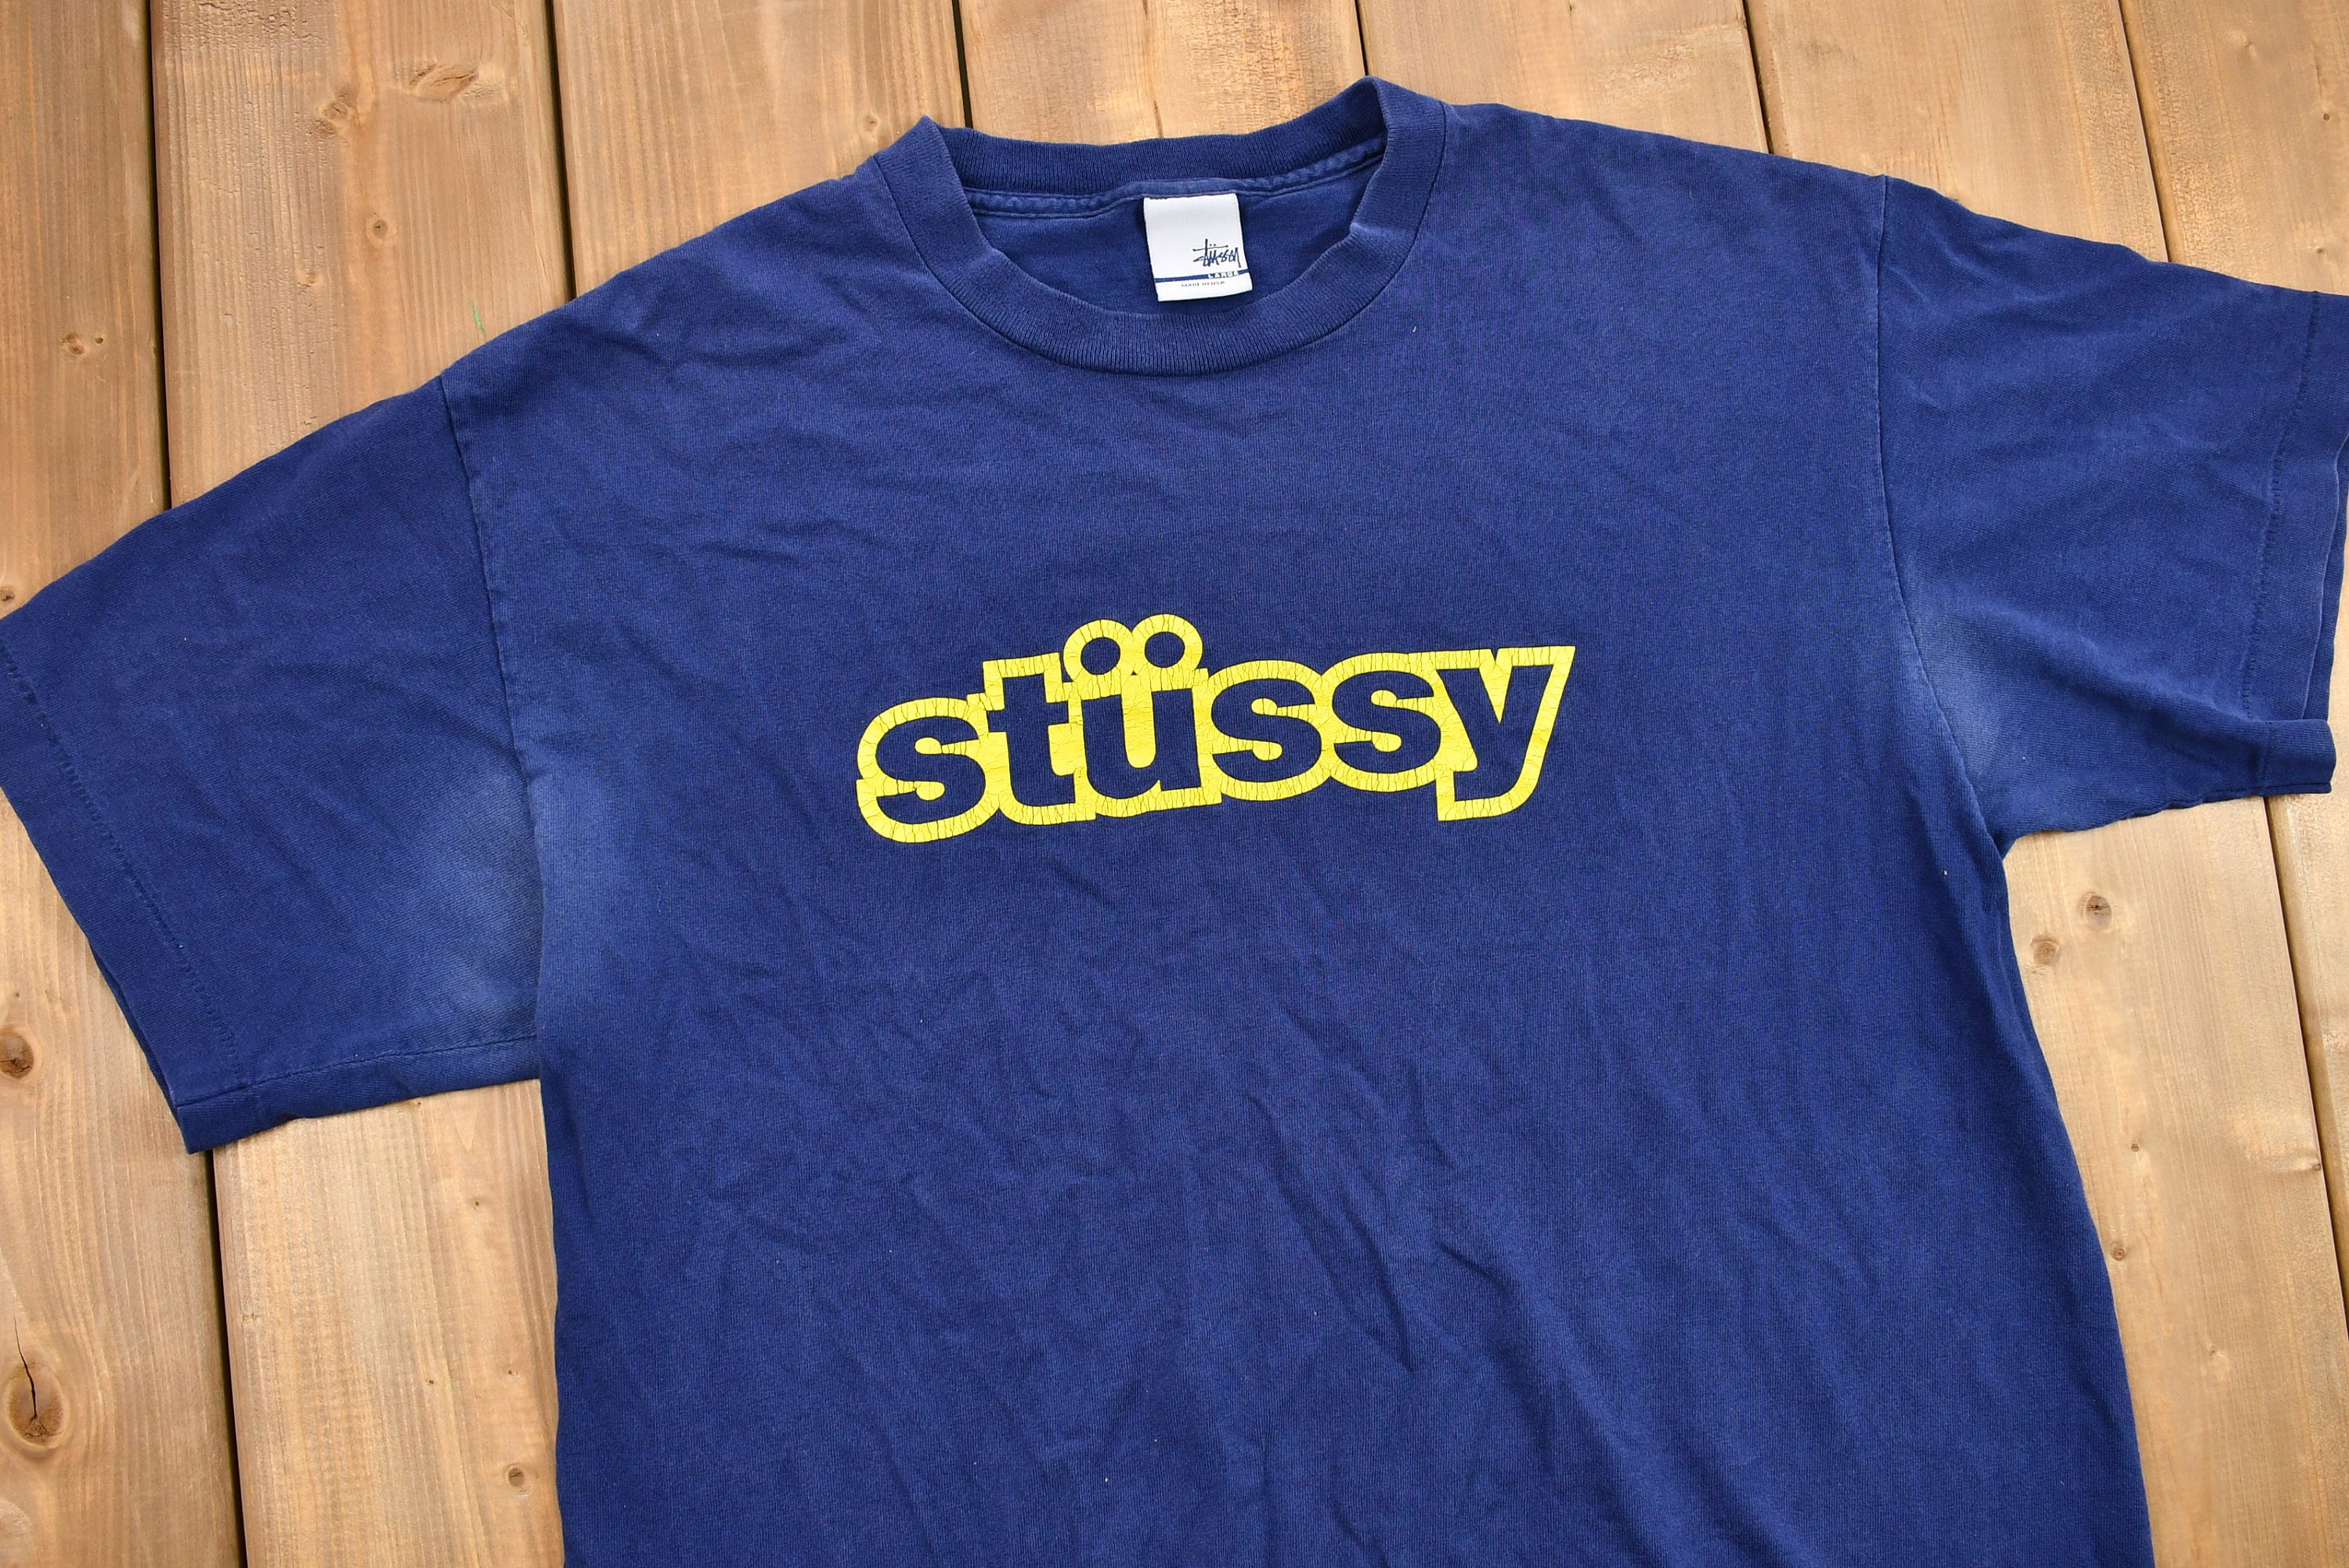 Vintage 1990s Stüssy T-shirt / 90s Streetwear / Single Stitch - Etsy